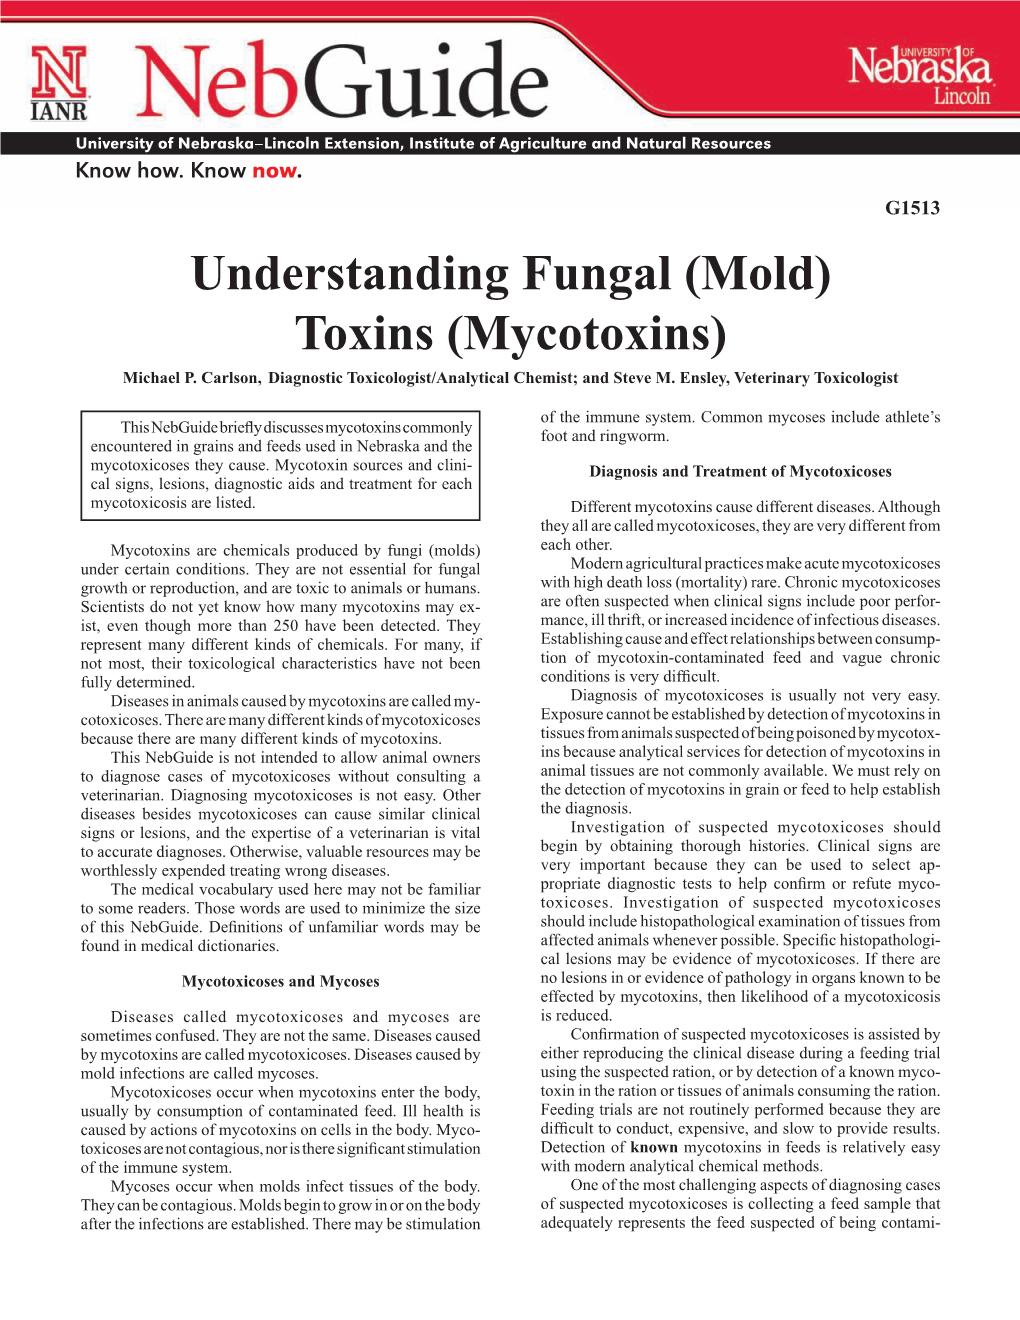 (Mold) Toxins (Mycotoxins) Michael P